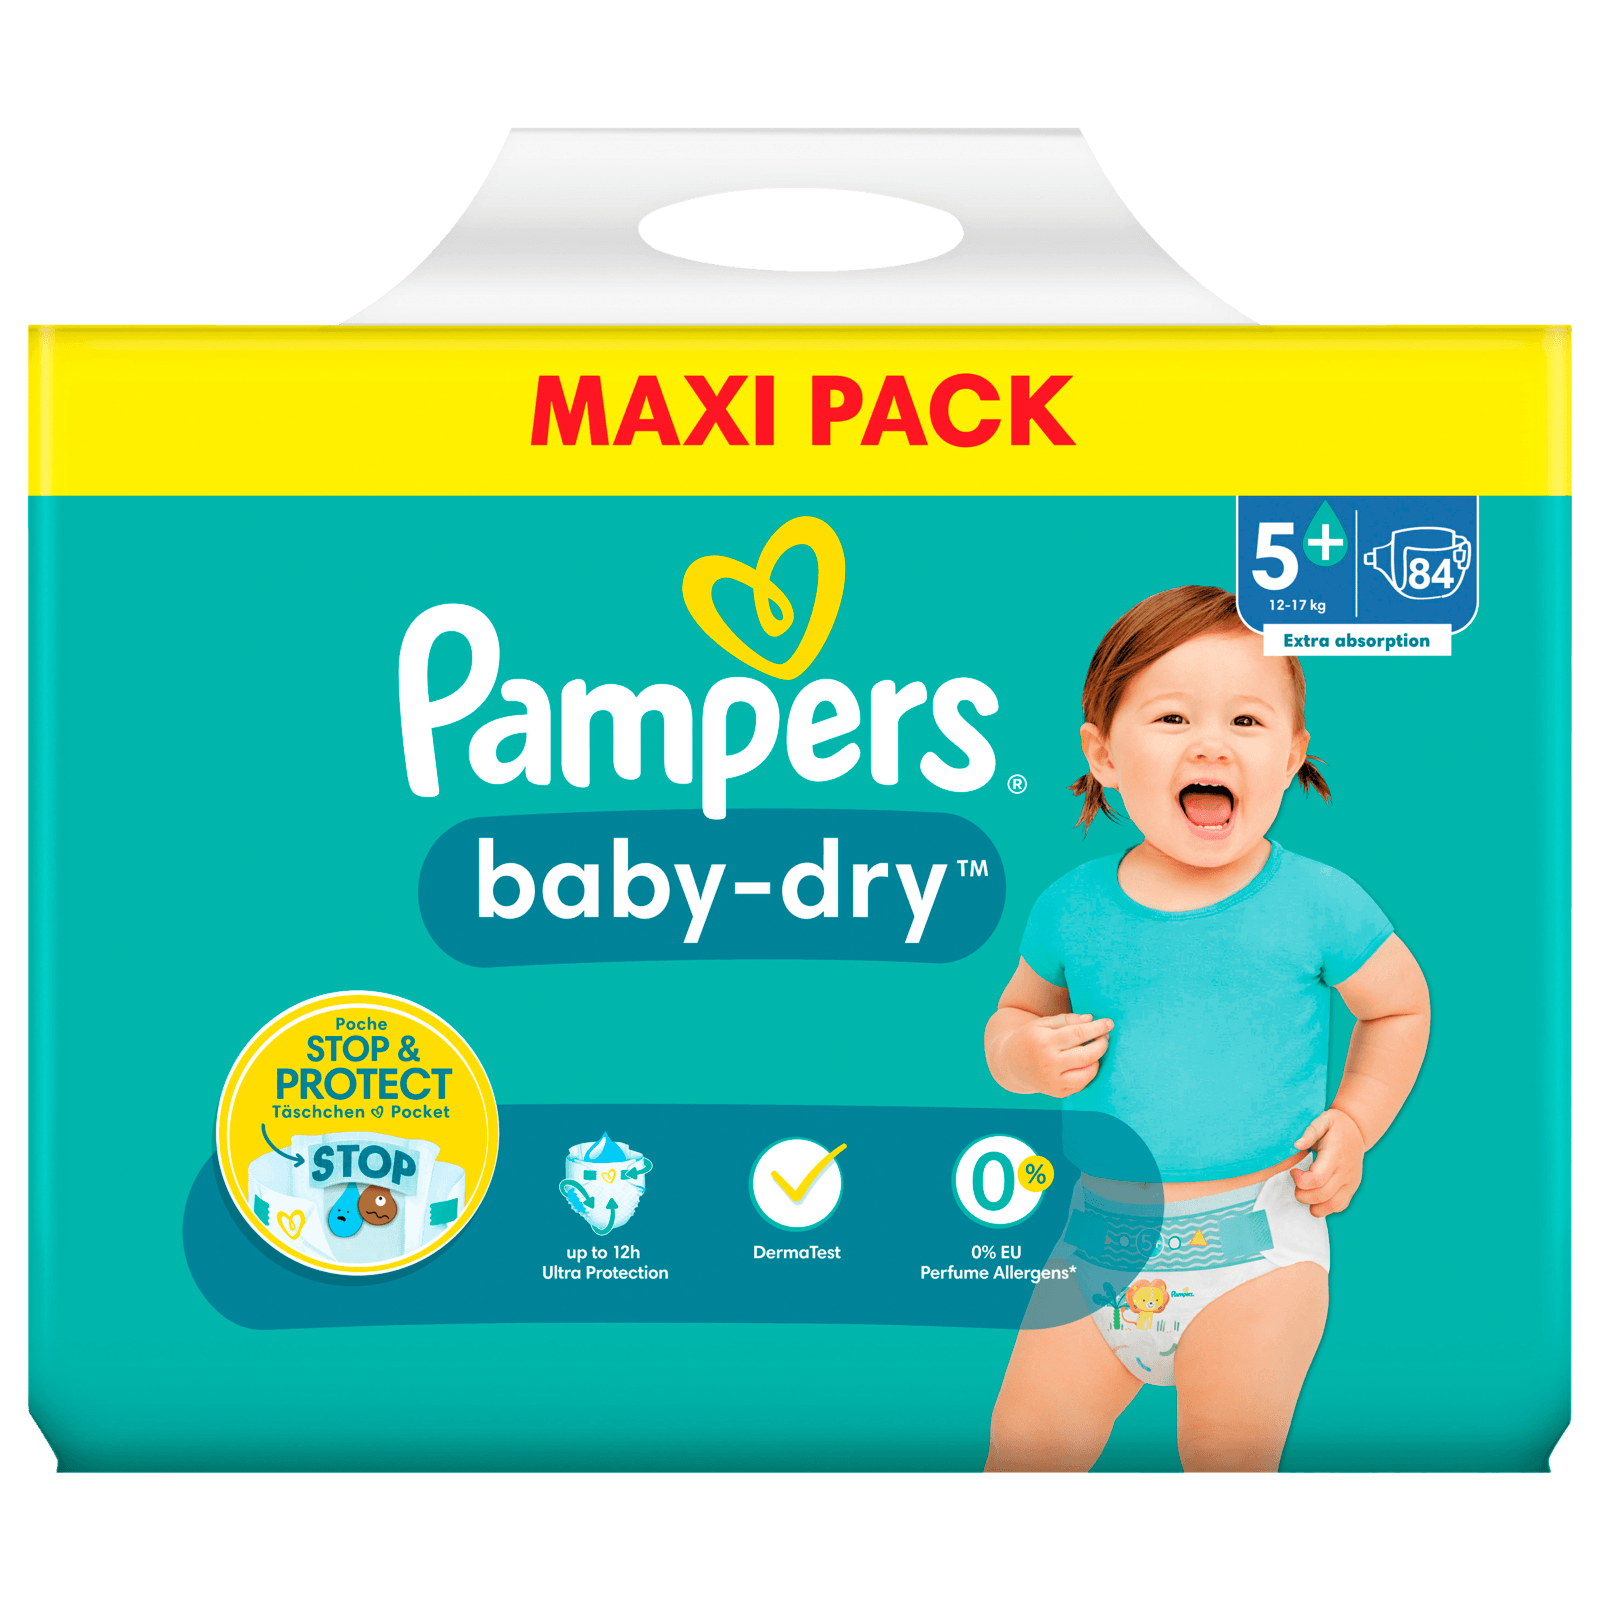 Pampers Baby-Dry Windeln 12-17kg Maxi Pack 84 Stück bei online bestellen!